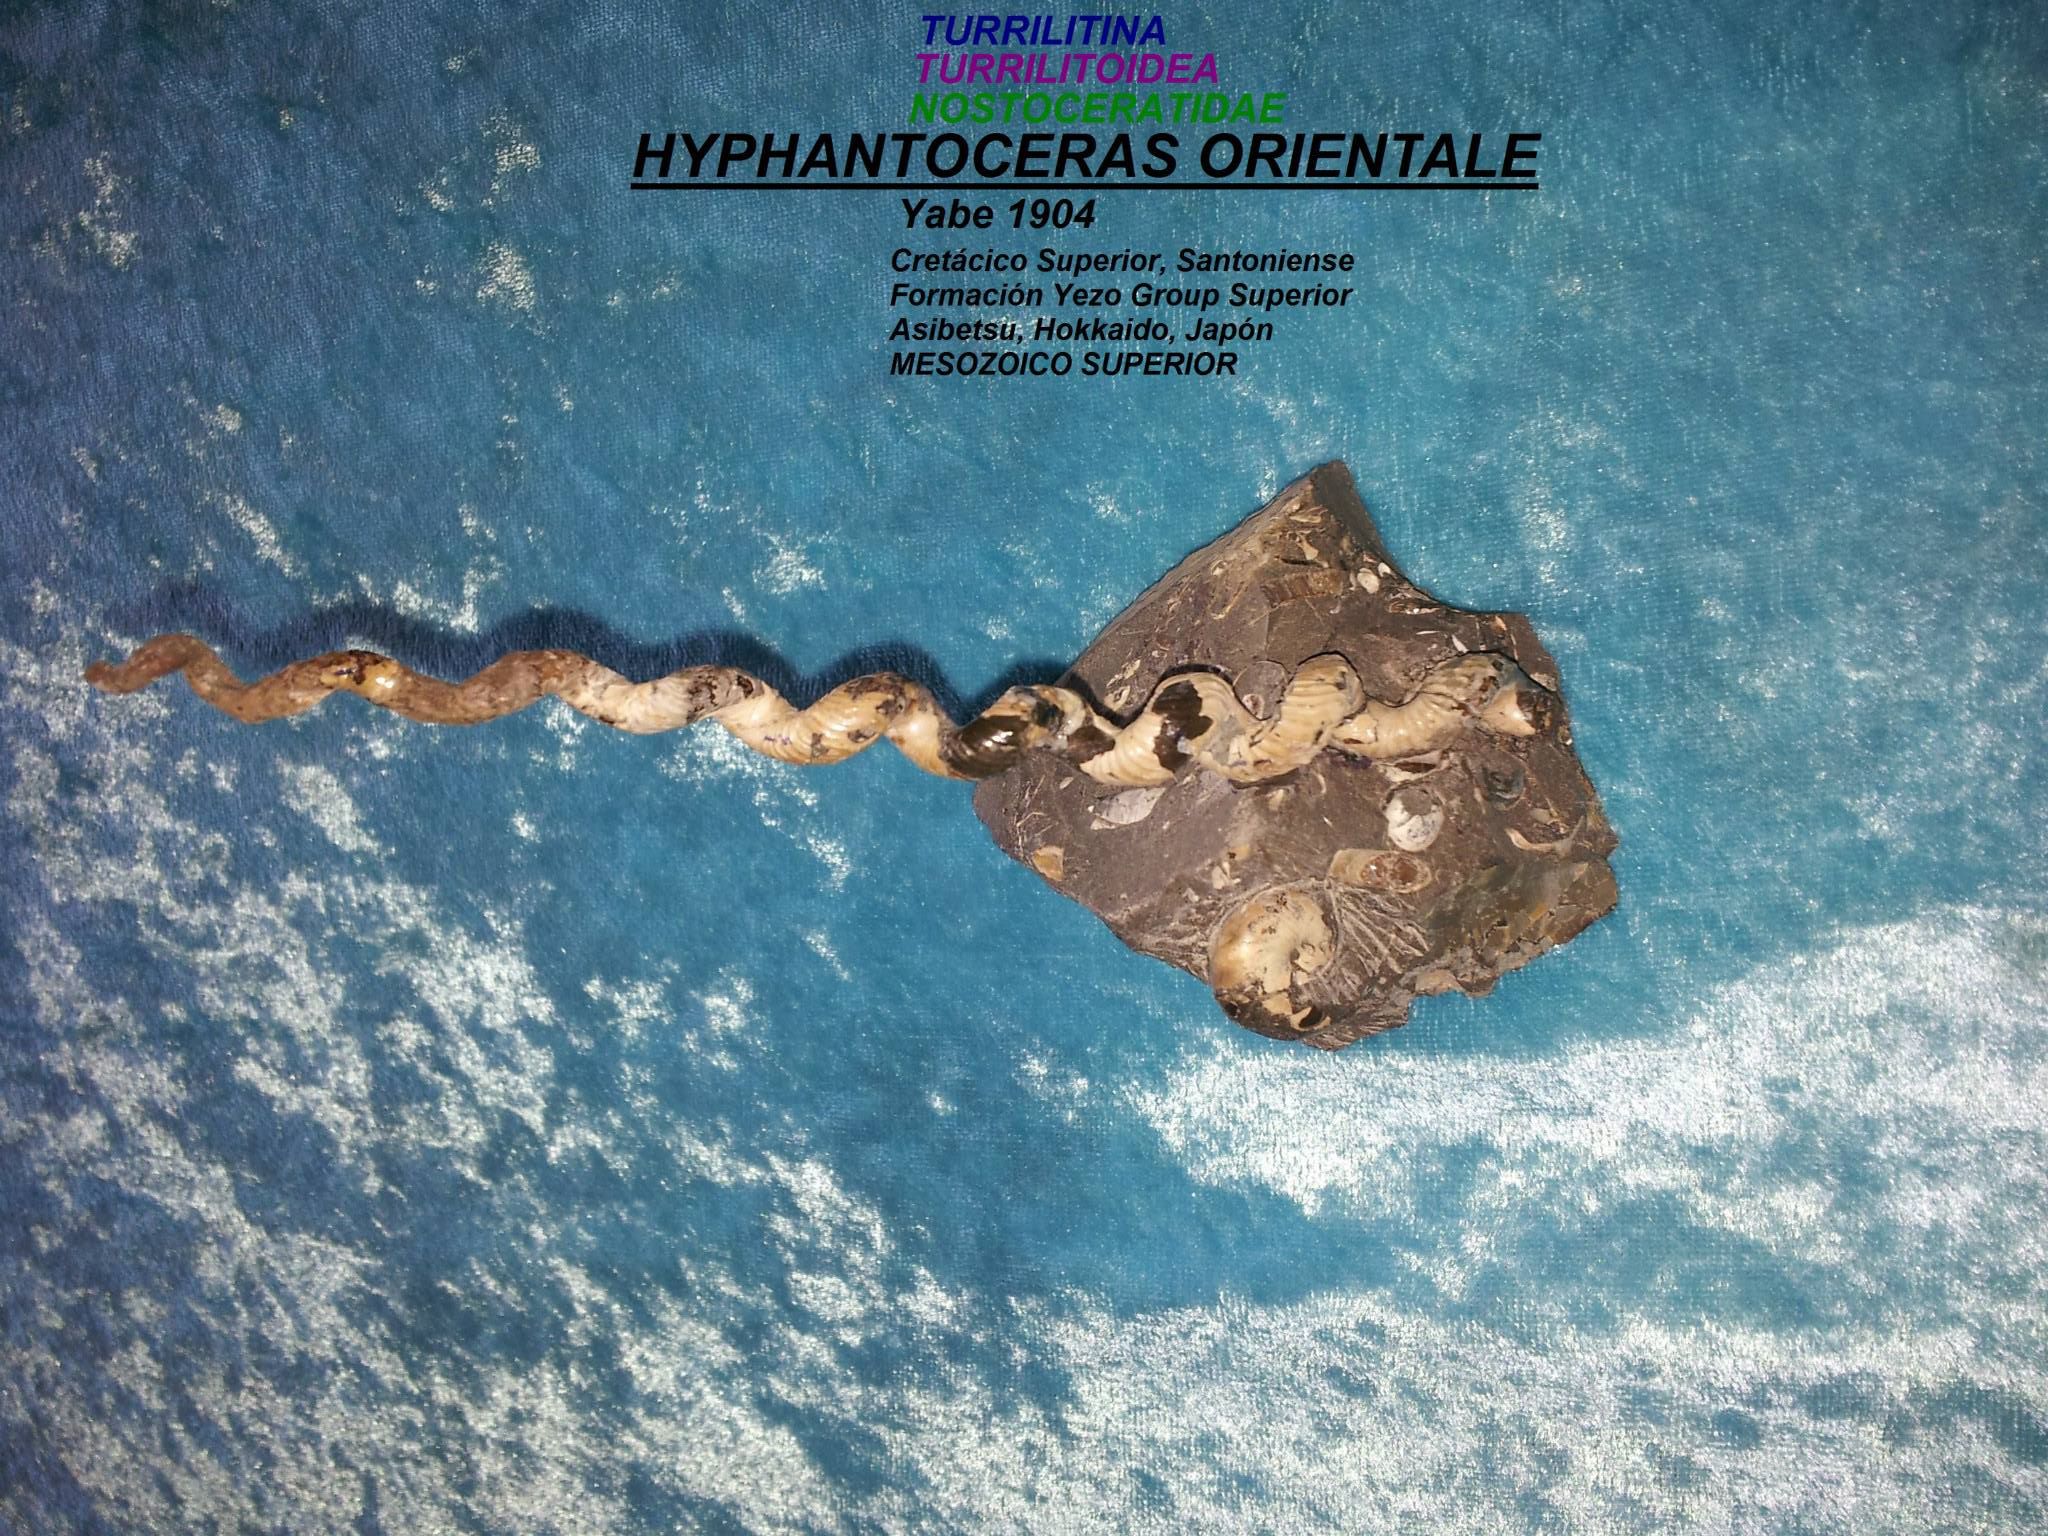 HYPHANTOCERAS ORIENTALE